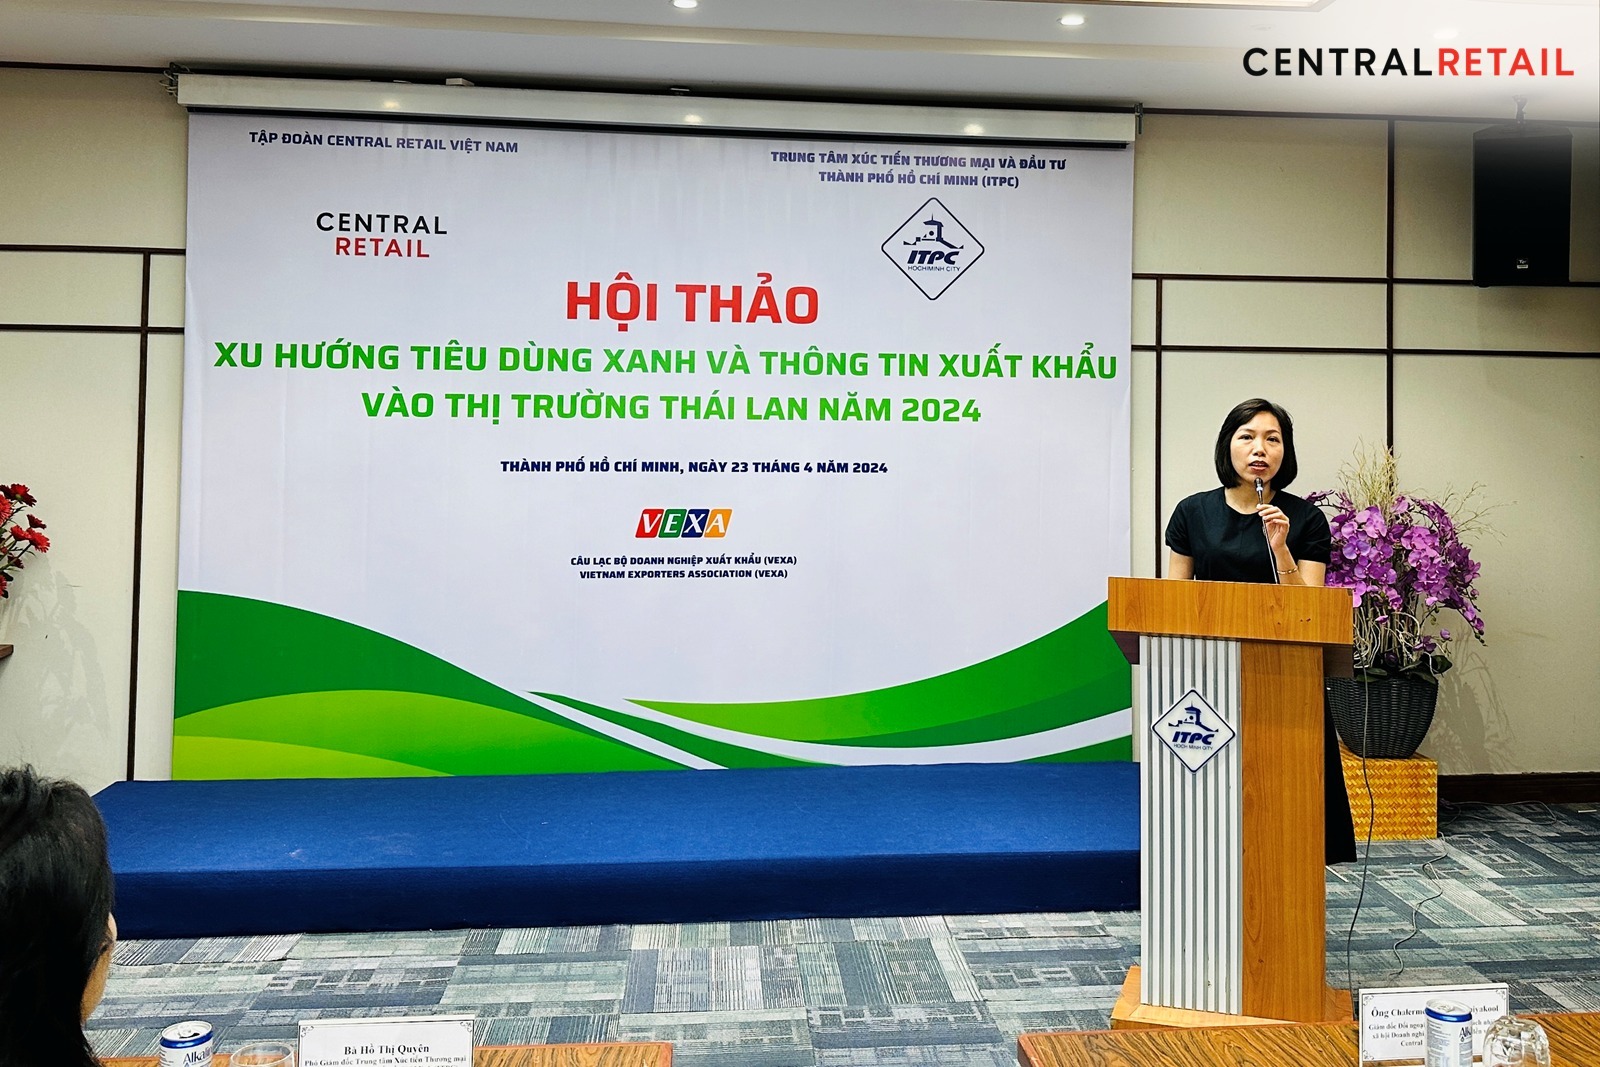 Central Retail Việt Nam cùng Trung tâm Xúc tiến Thương mại và Đầu tư TP.HCM tổ chức Hội thảo “Xu hướng Tiêu dùng xanh và thông tin xuất khẩu vào thị trường Thái Lan năm 2024”